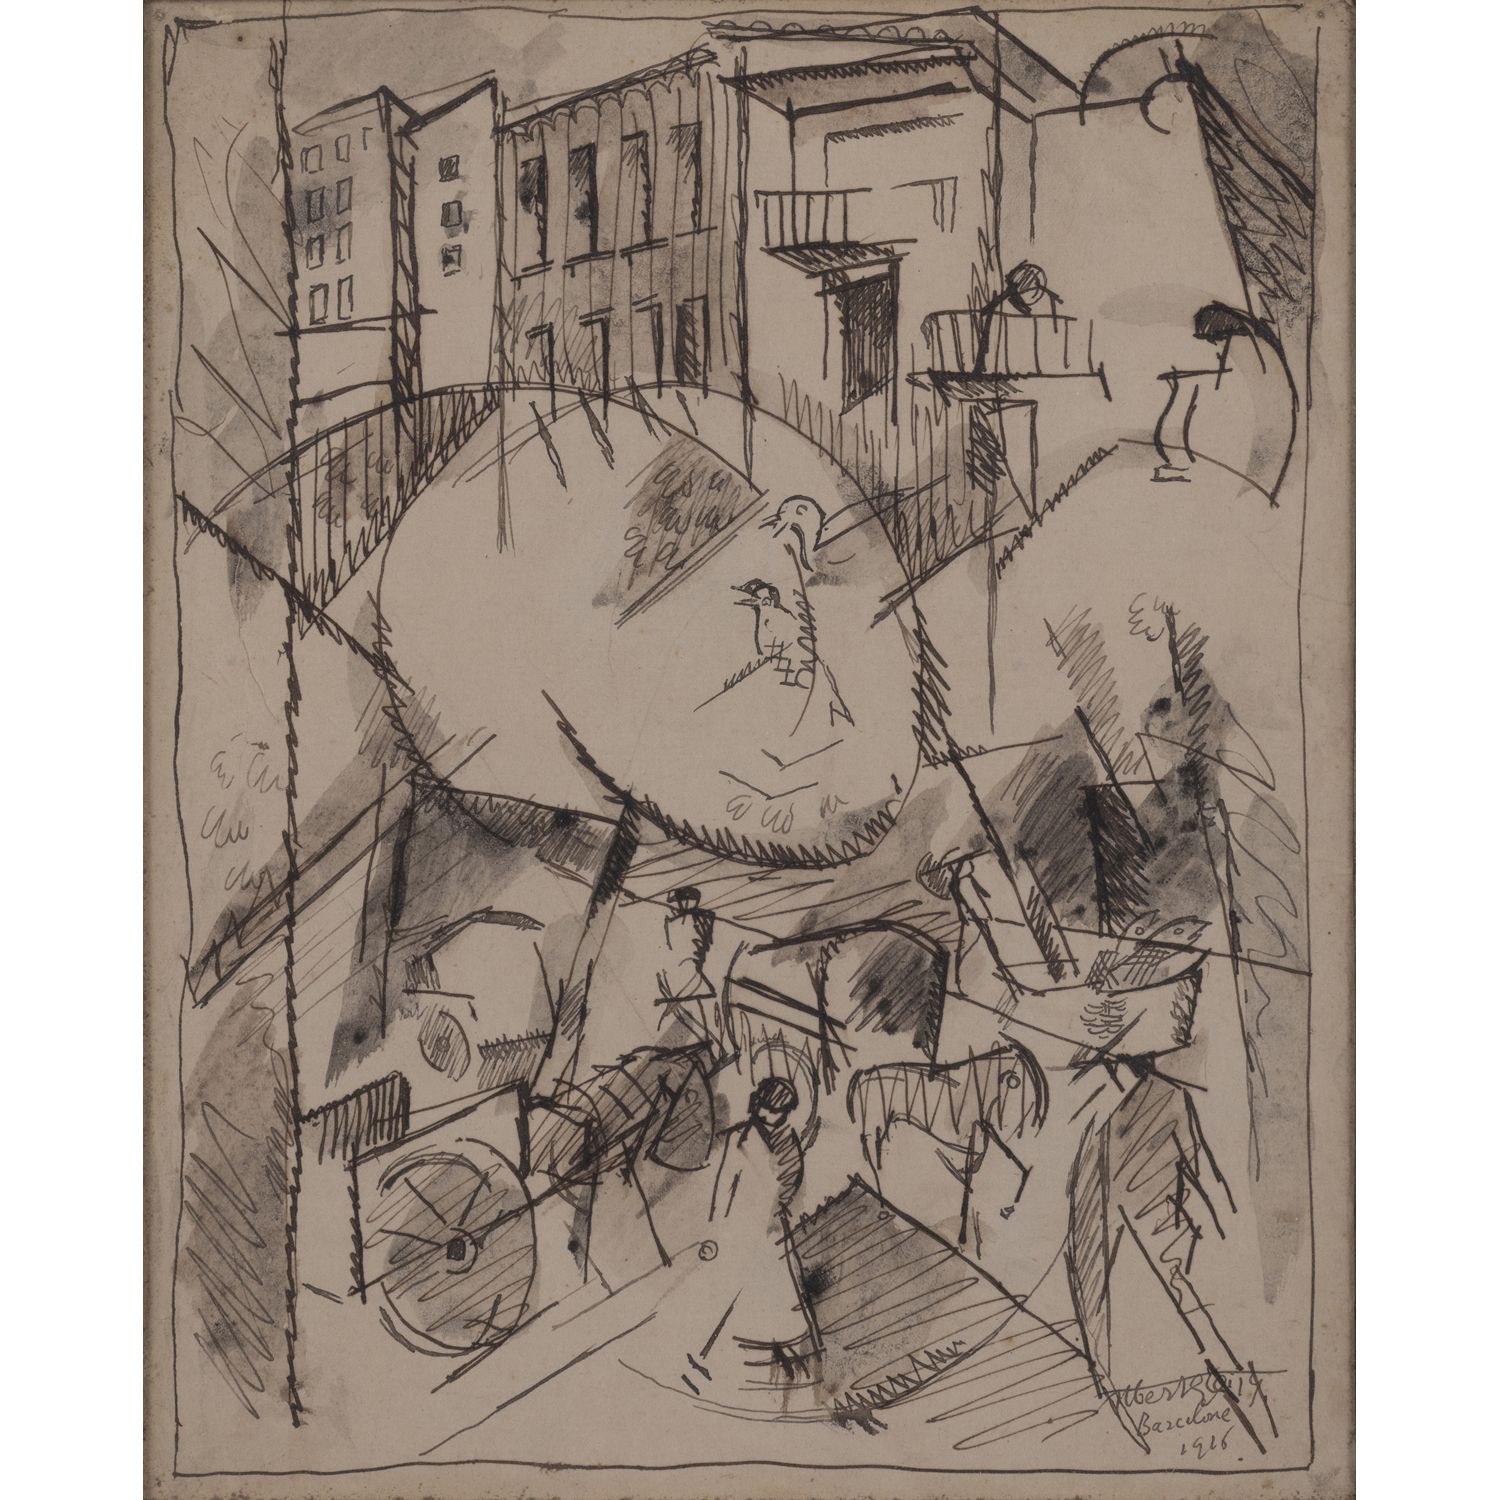 Null 阿尔伯特-格里兹(1881-1953)

无题（巴塞罗那广场），1916年

纸上印度墨水

右下方有签名、日期和位置

27 × 21 厘米

参考&hellip;